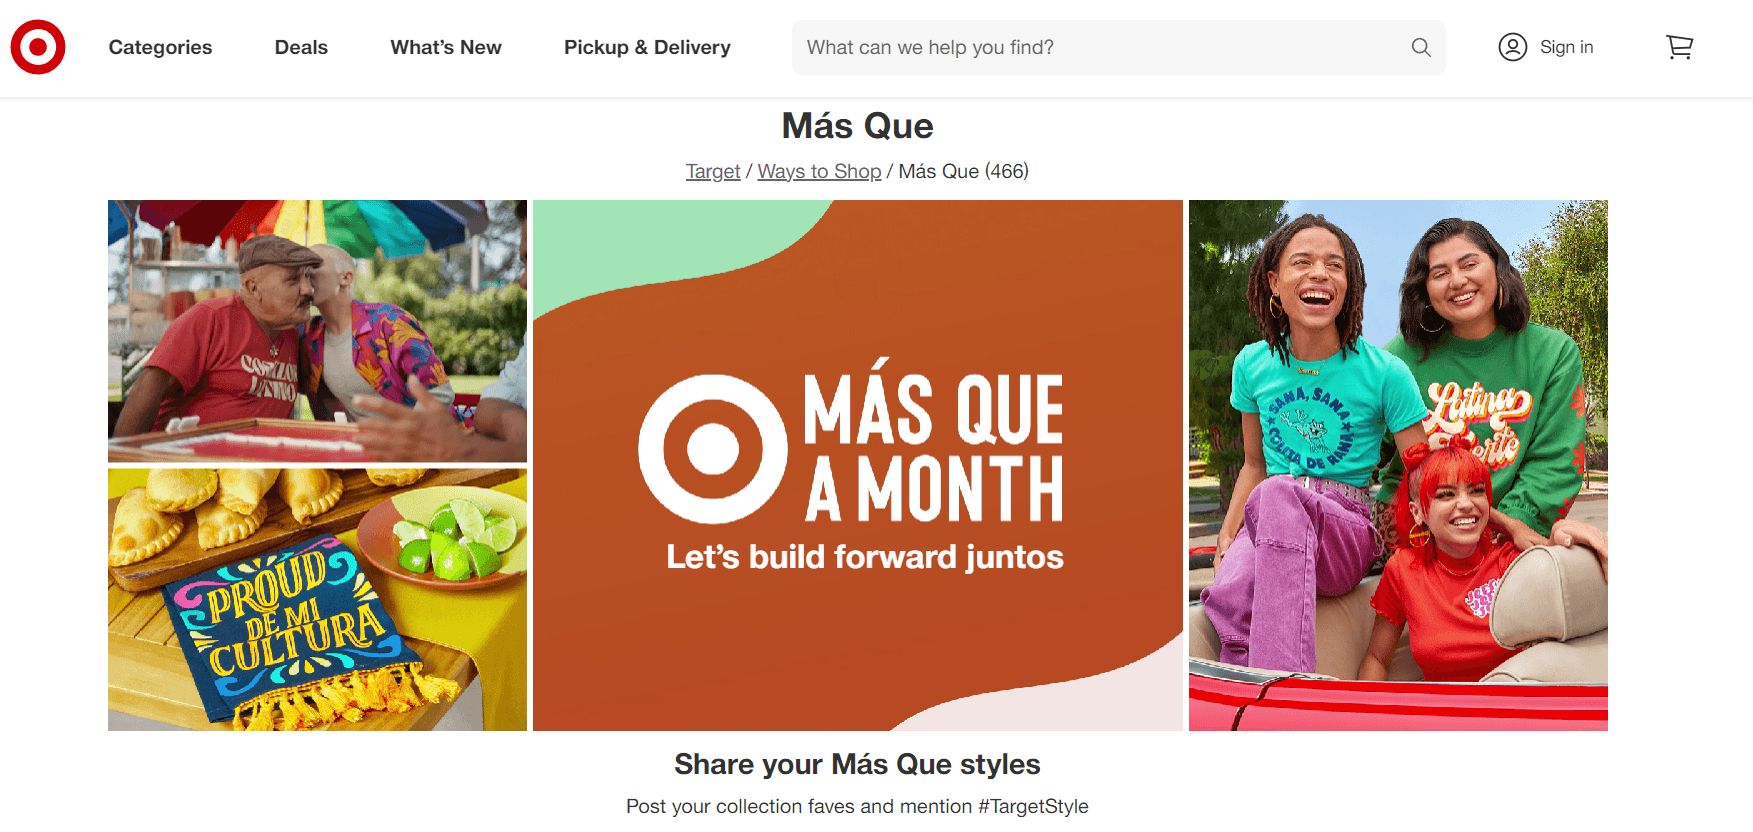 Target - Mas Que A Month campaign